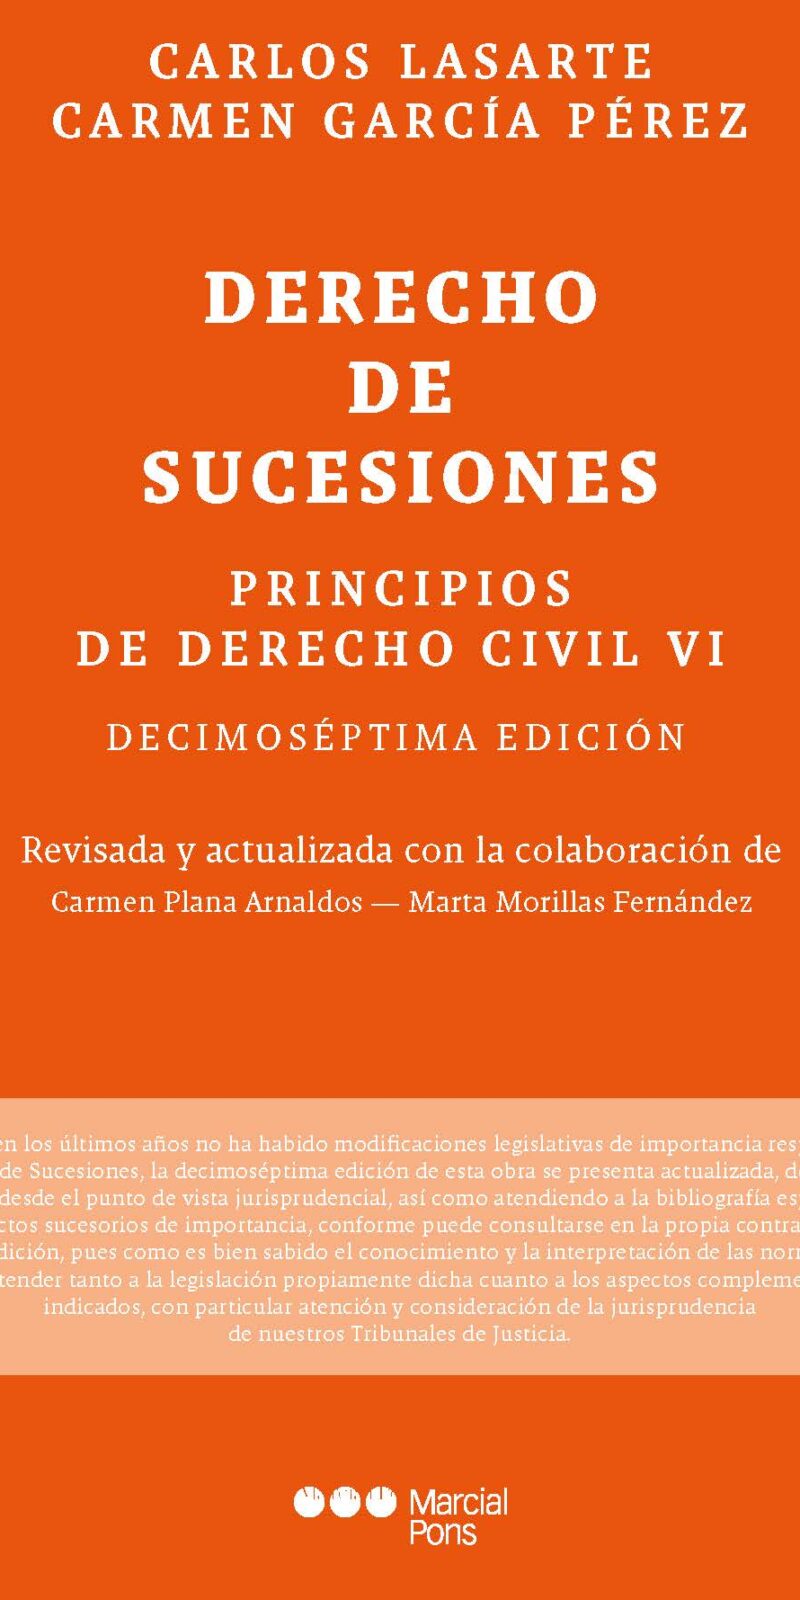 Principios de derecho civil VI